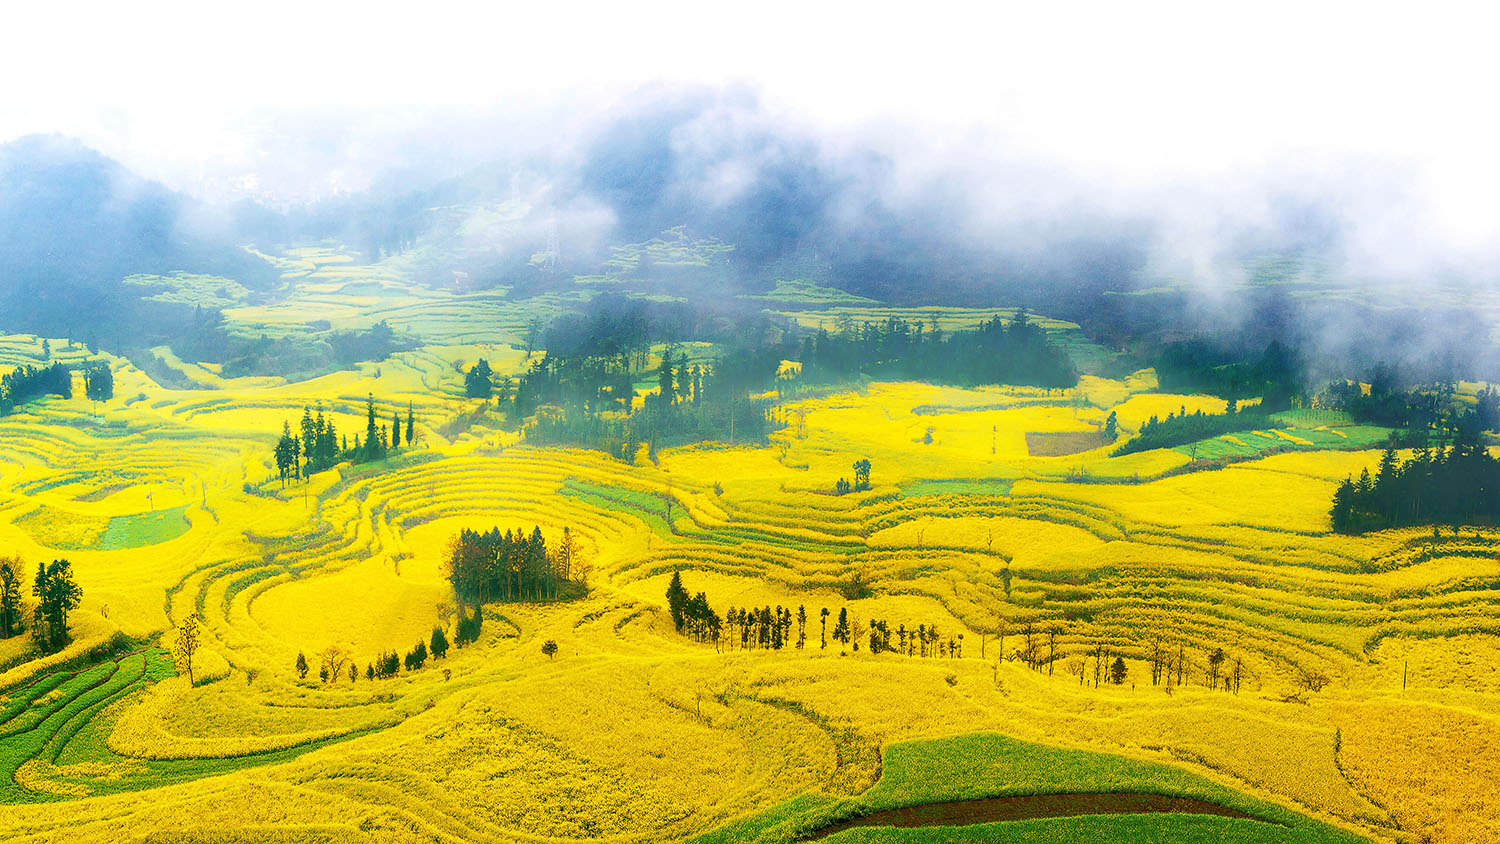 Blumenmeere:

Der Frühling rund um die märchenhaften Jinji-Berge in Luoping bringt ein wahres Spektakel mit sich. Denn im Mai beginnen hier die Rapsfelder in sattem Gelb zu blühen. Der Anblick der sonnigen, hügeligen Terrassenfelder, die aus dem Nebel auftauchen, ist eine Reise wert.
